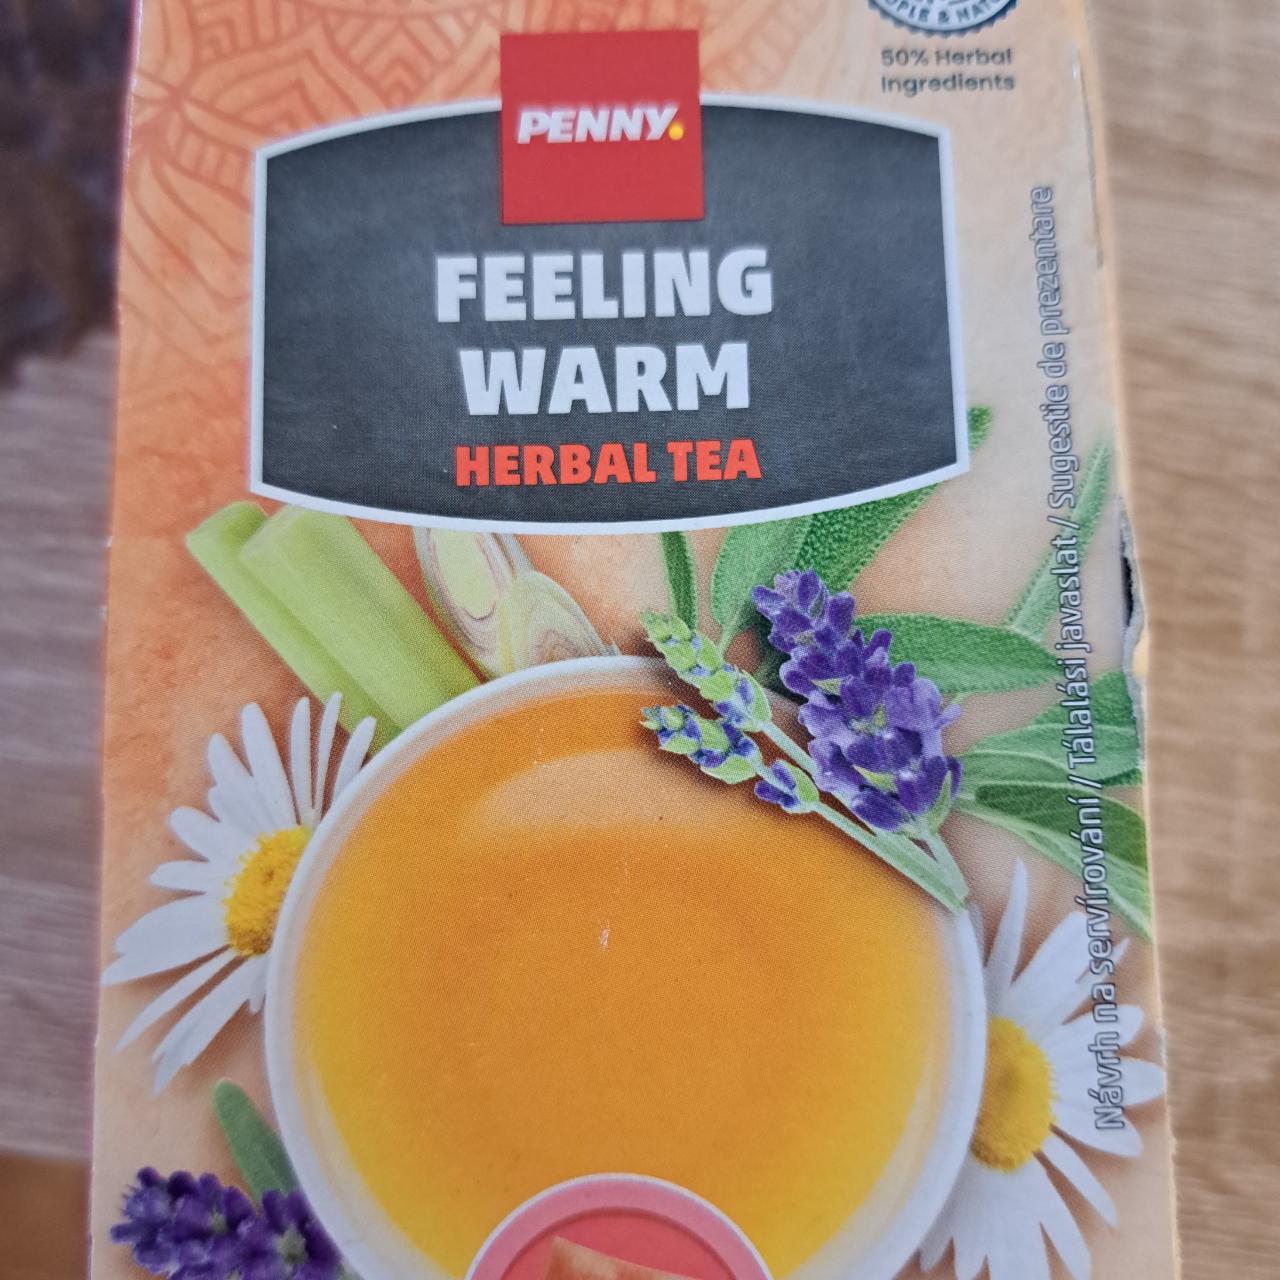 Fotografie - Feeling Warm Herbal Tea Penny